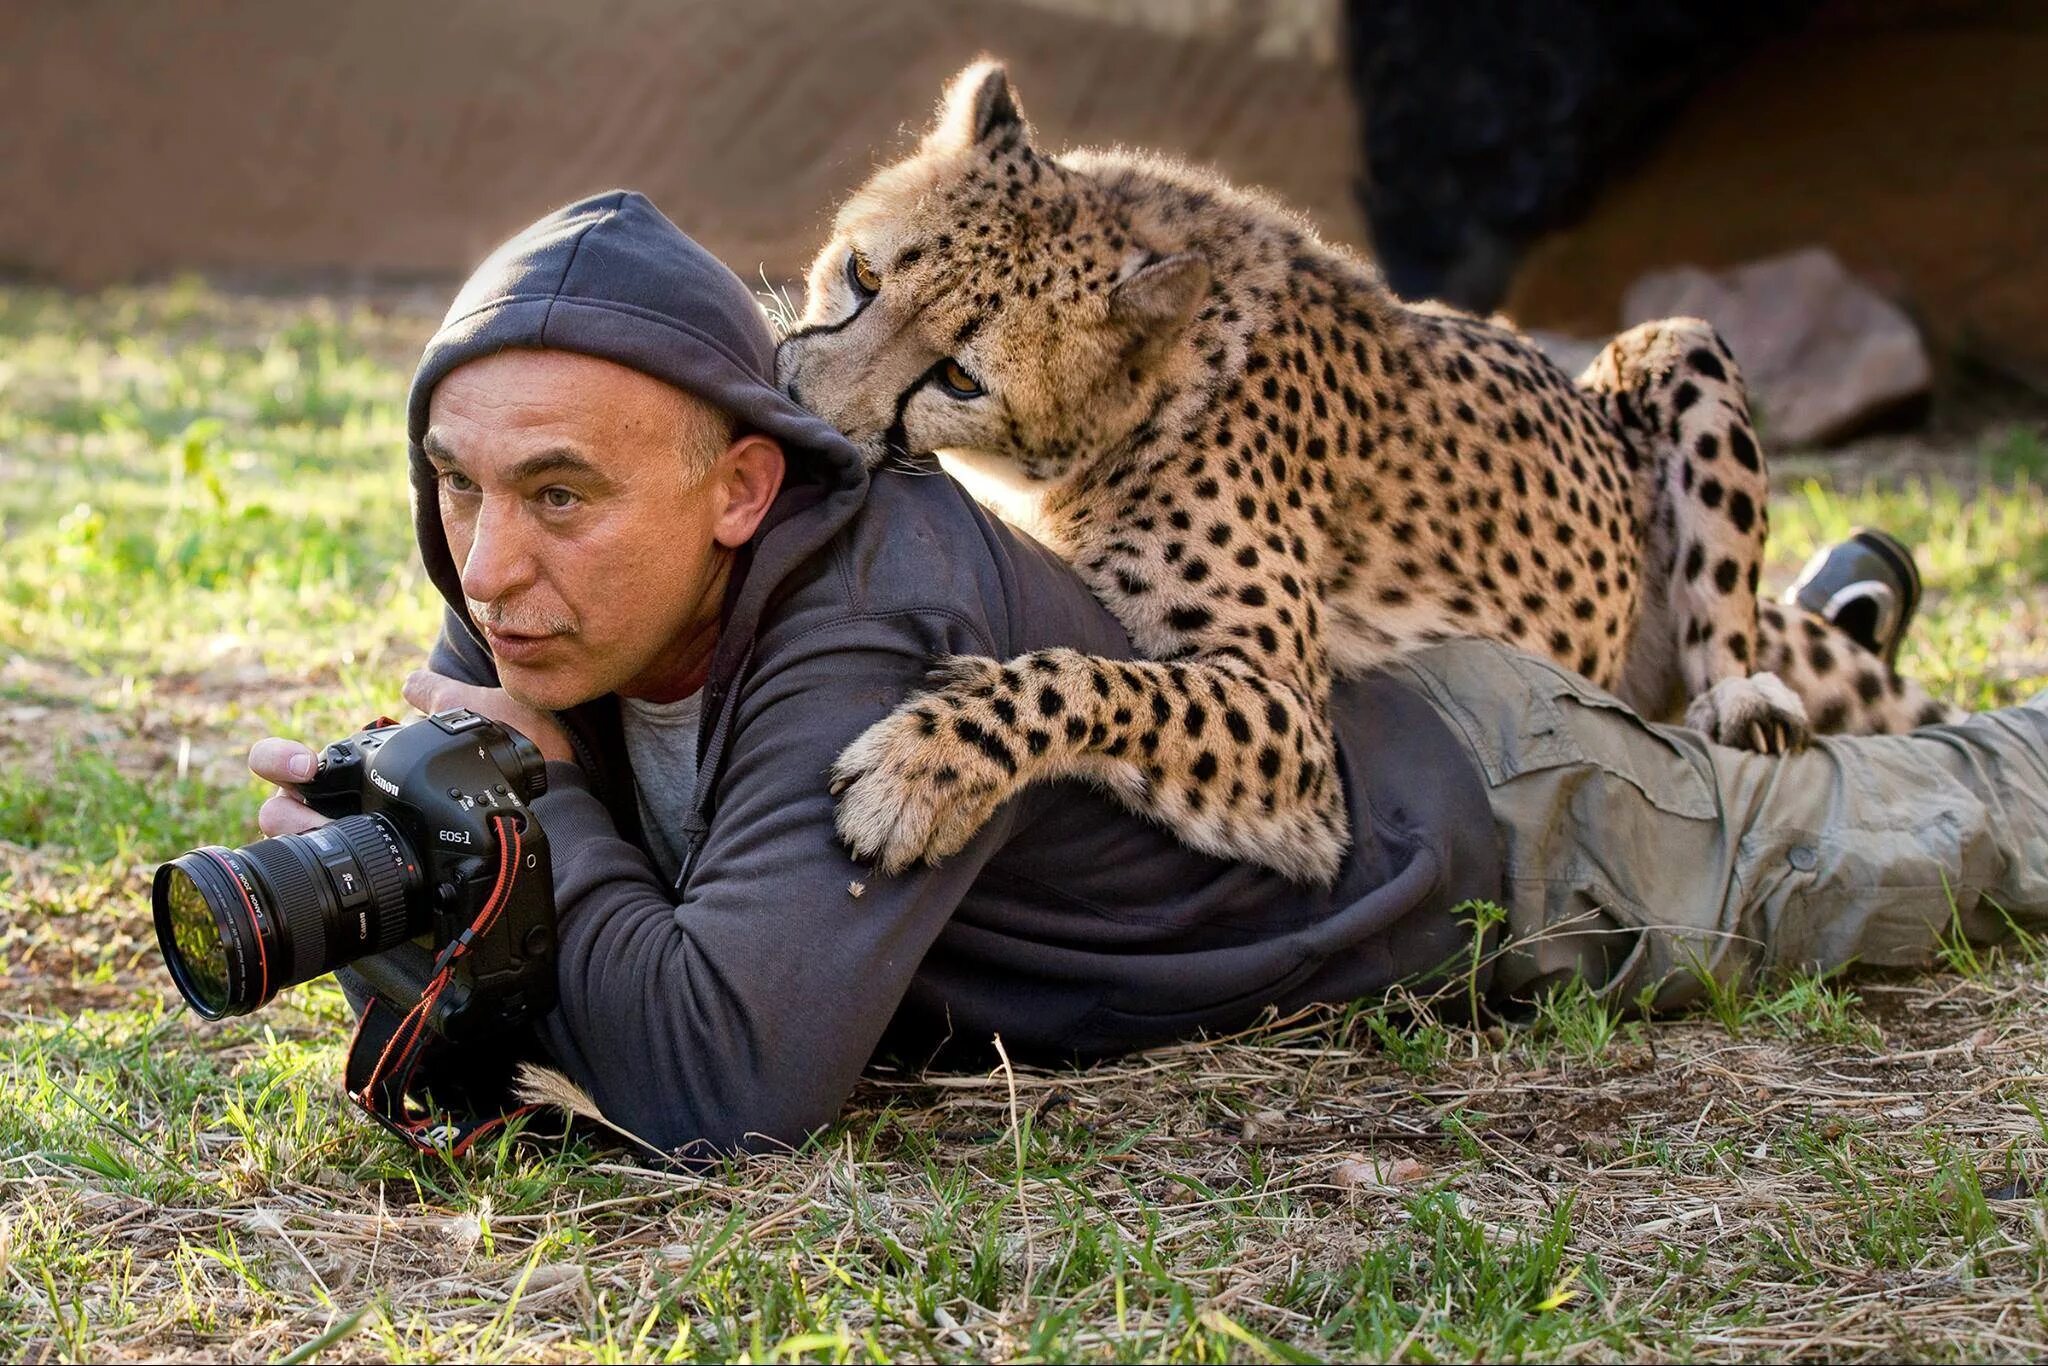 Смешные фотки. Юсин фотограф. Геннадий Юсин фотограф. Фотографы с дикими животными. Съемка диких животных.